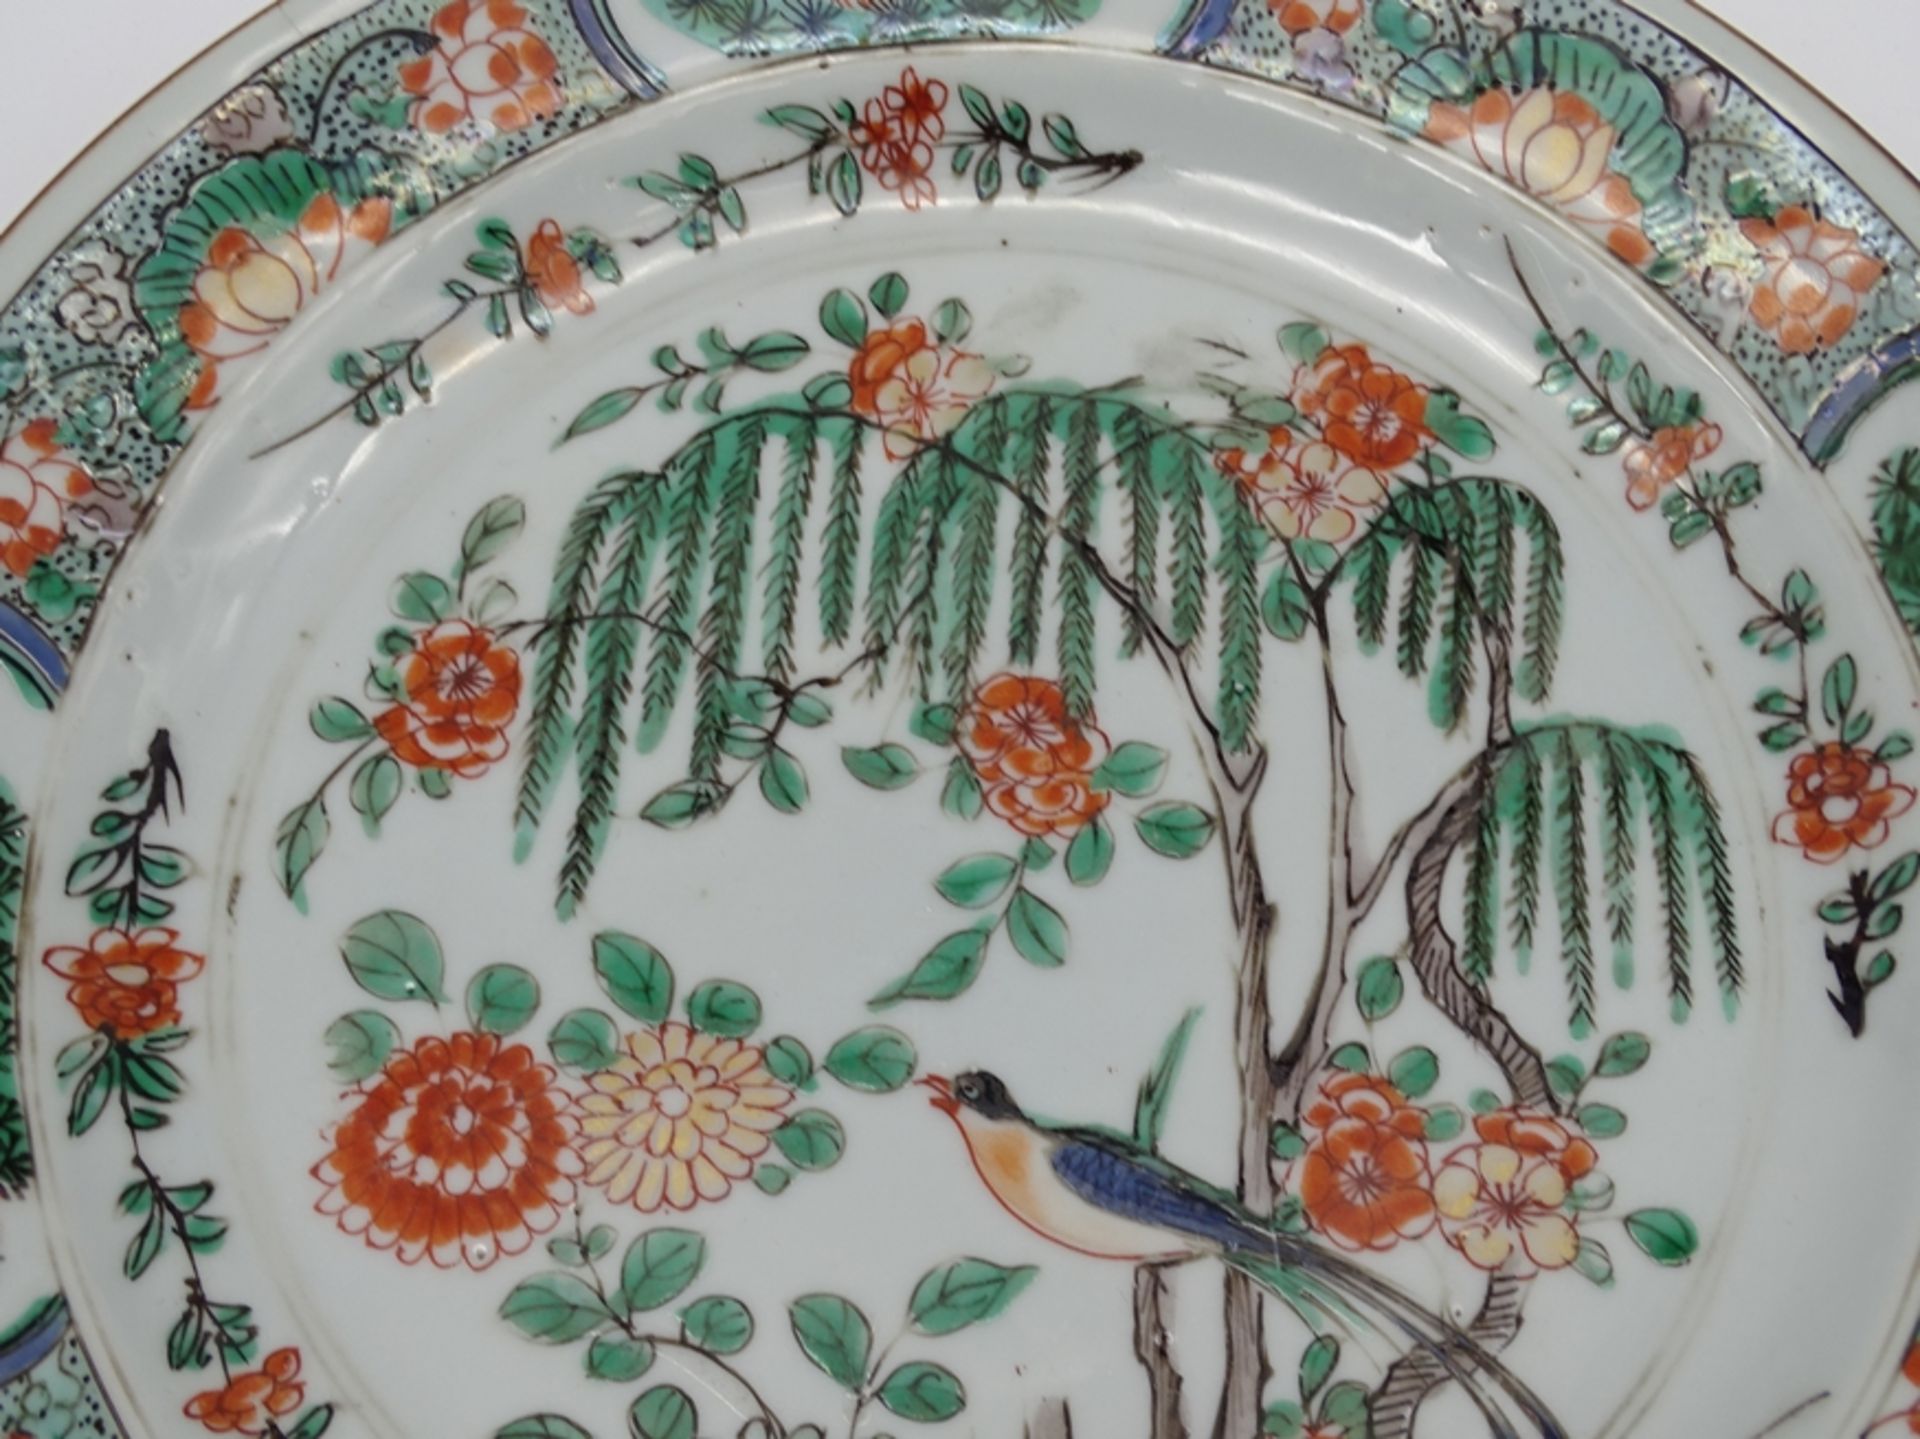 Großer Teller mit Vogel und Blumenmotiven,China, älter, D. 24cm, geklebte Stellen - Bild 3 aus 11